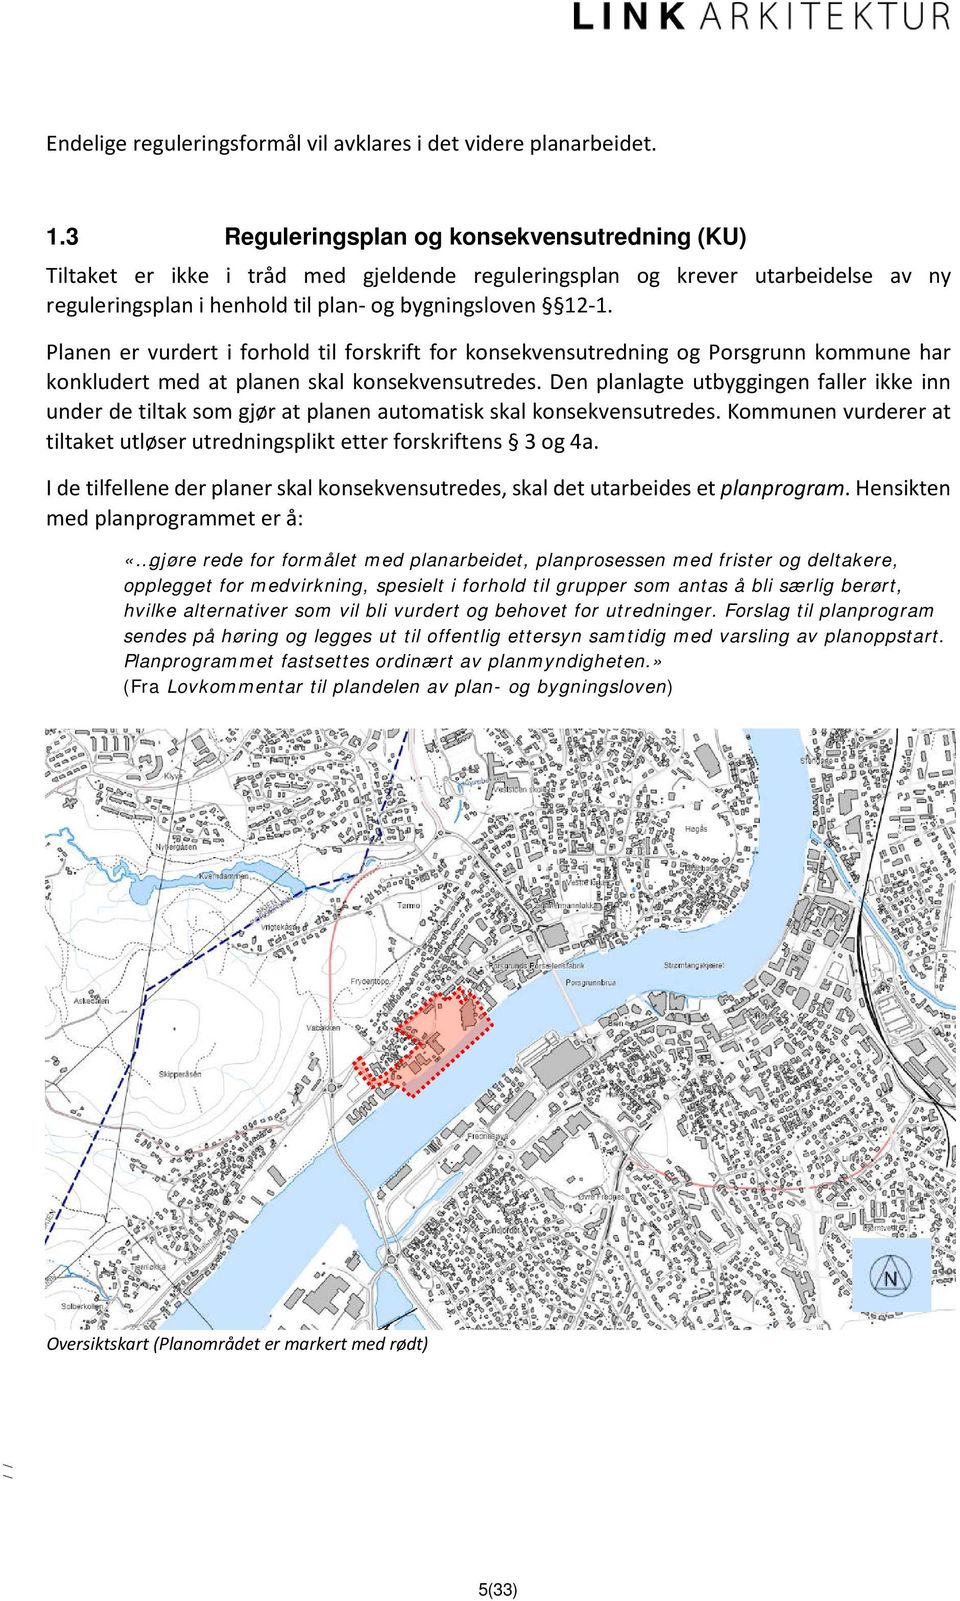 Planen er vurdert i forhold til forskrift for konsekvensutredning og Porsgrunn kommune har konkludert med at planen skal konsekvensutredes.